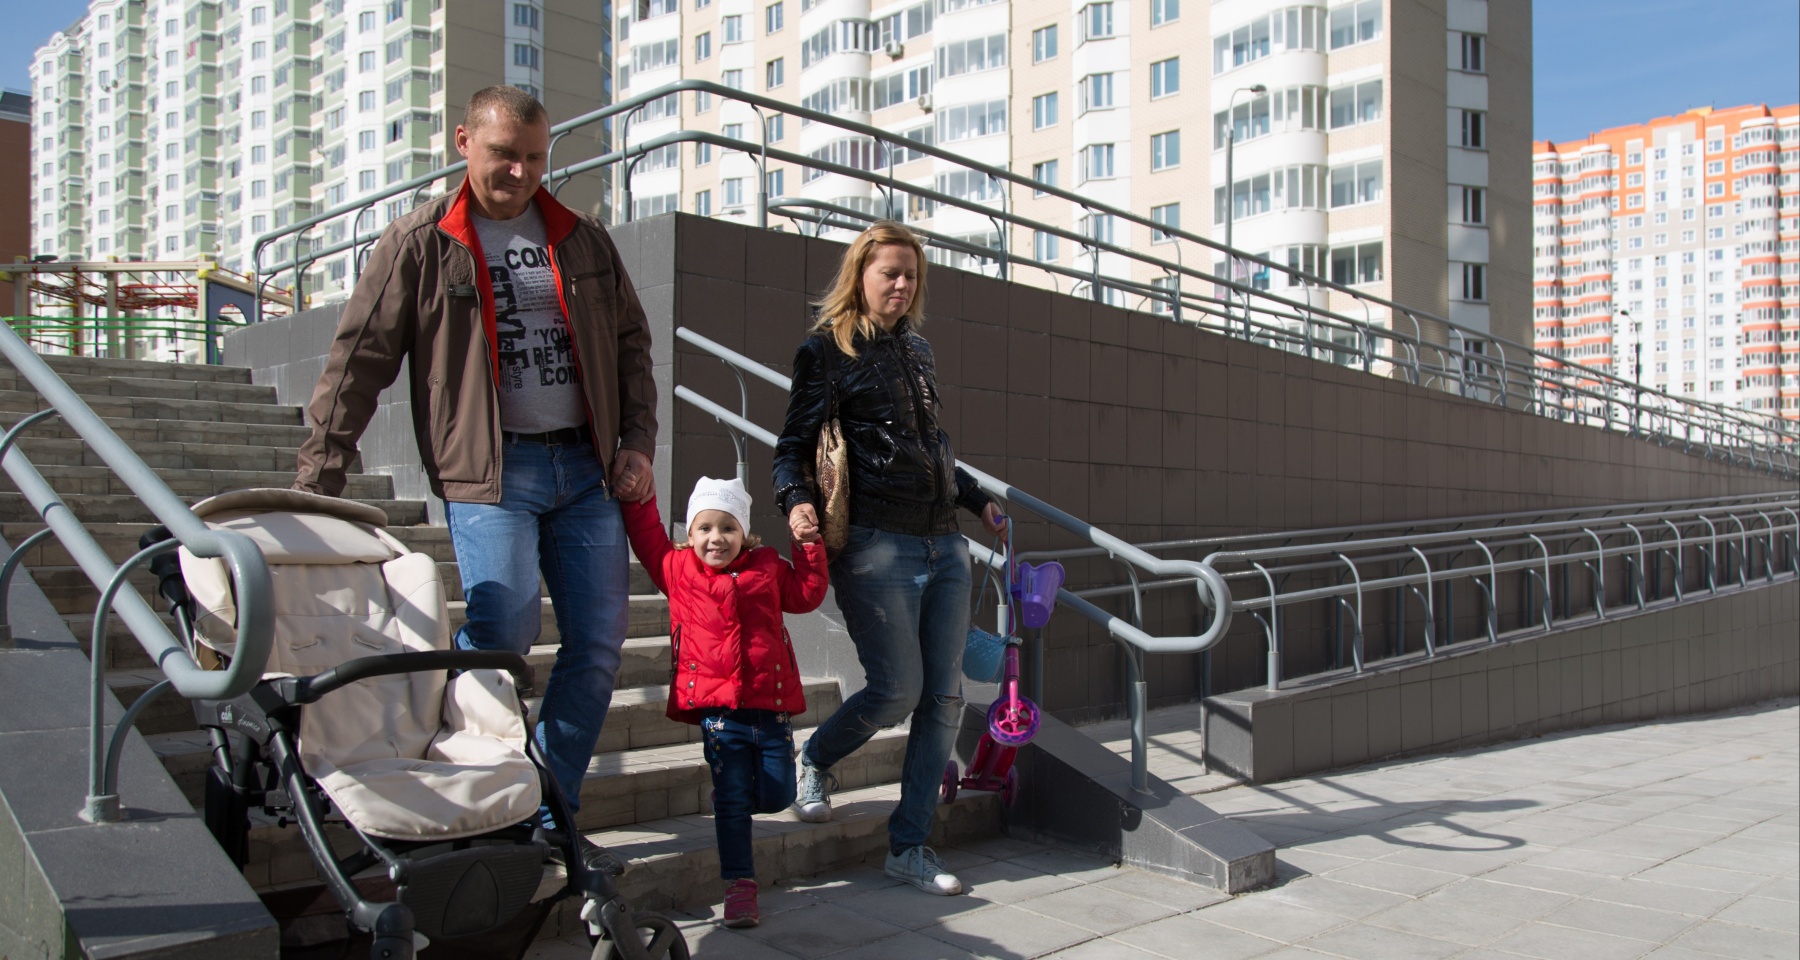 Ставка на повышение: эксперты оценили слова Путина о семейной ипотеке